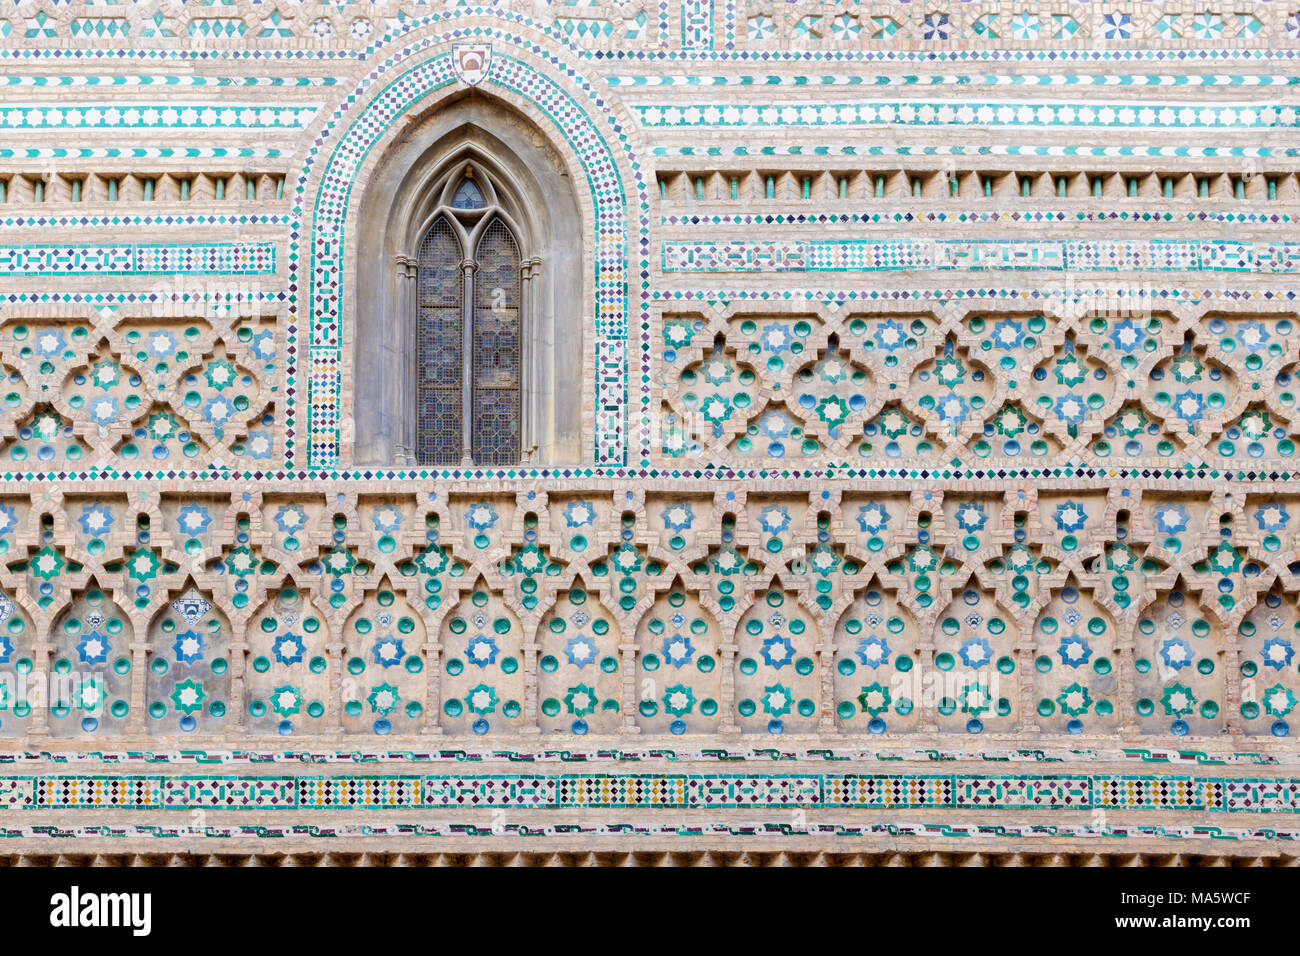 ZARAGOZA, SPAIN - MARCH 3, 2018:  The Mudejar facade of church La Seo del Salvador cathedral. Stock Photo